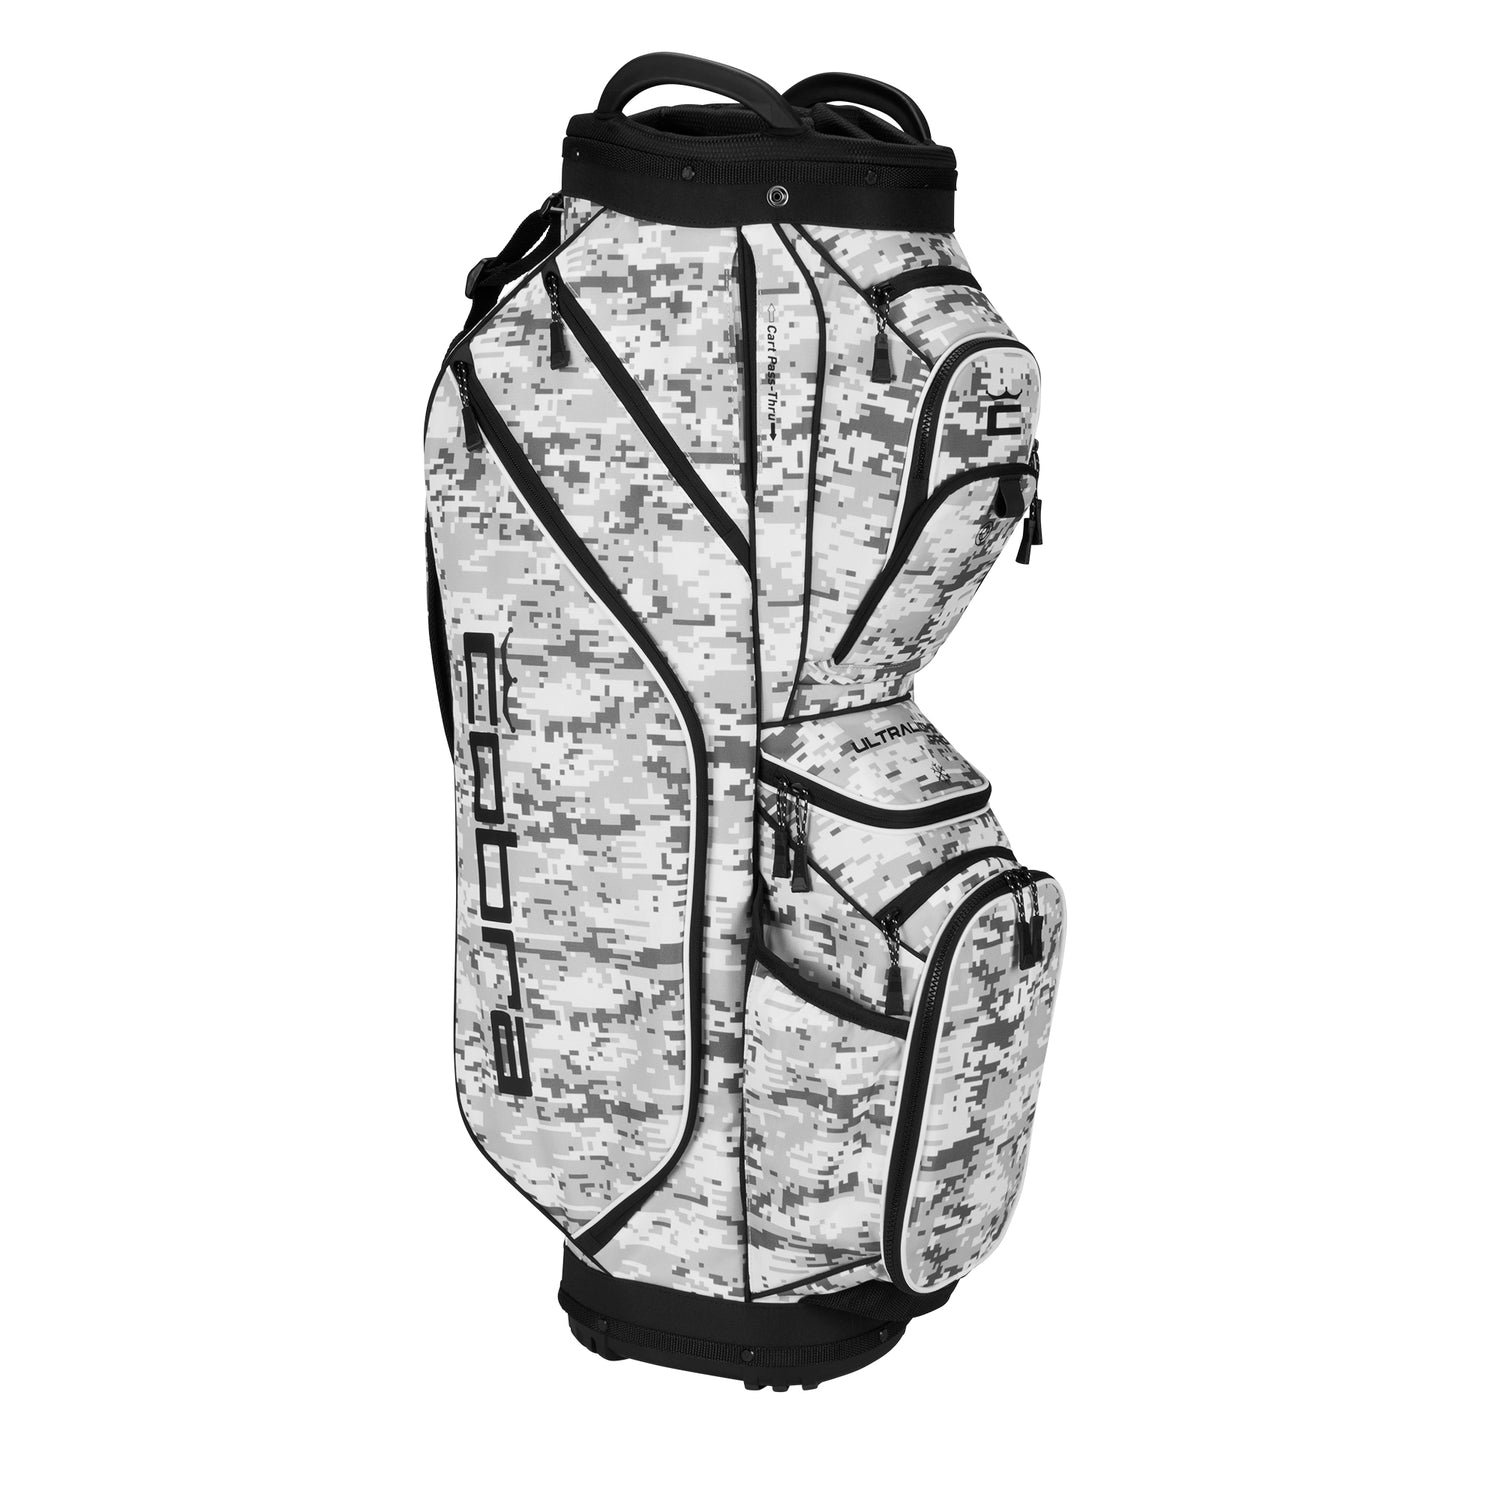 Ultralight Pro Cart Golf Bag – COBRA Golf